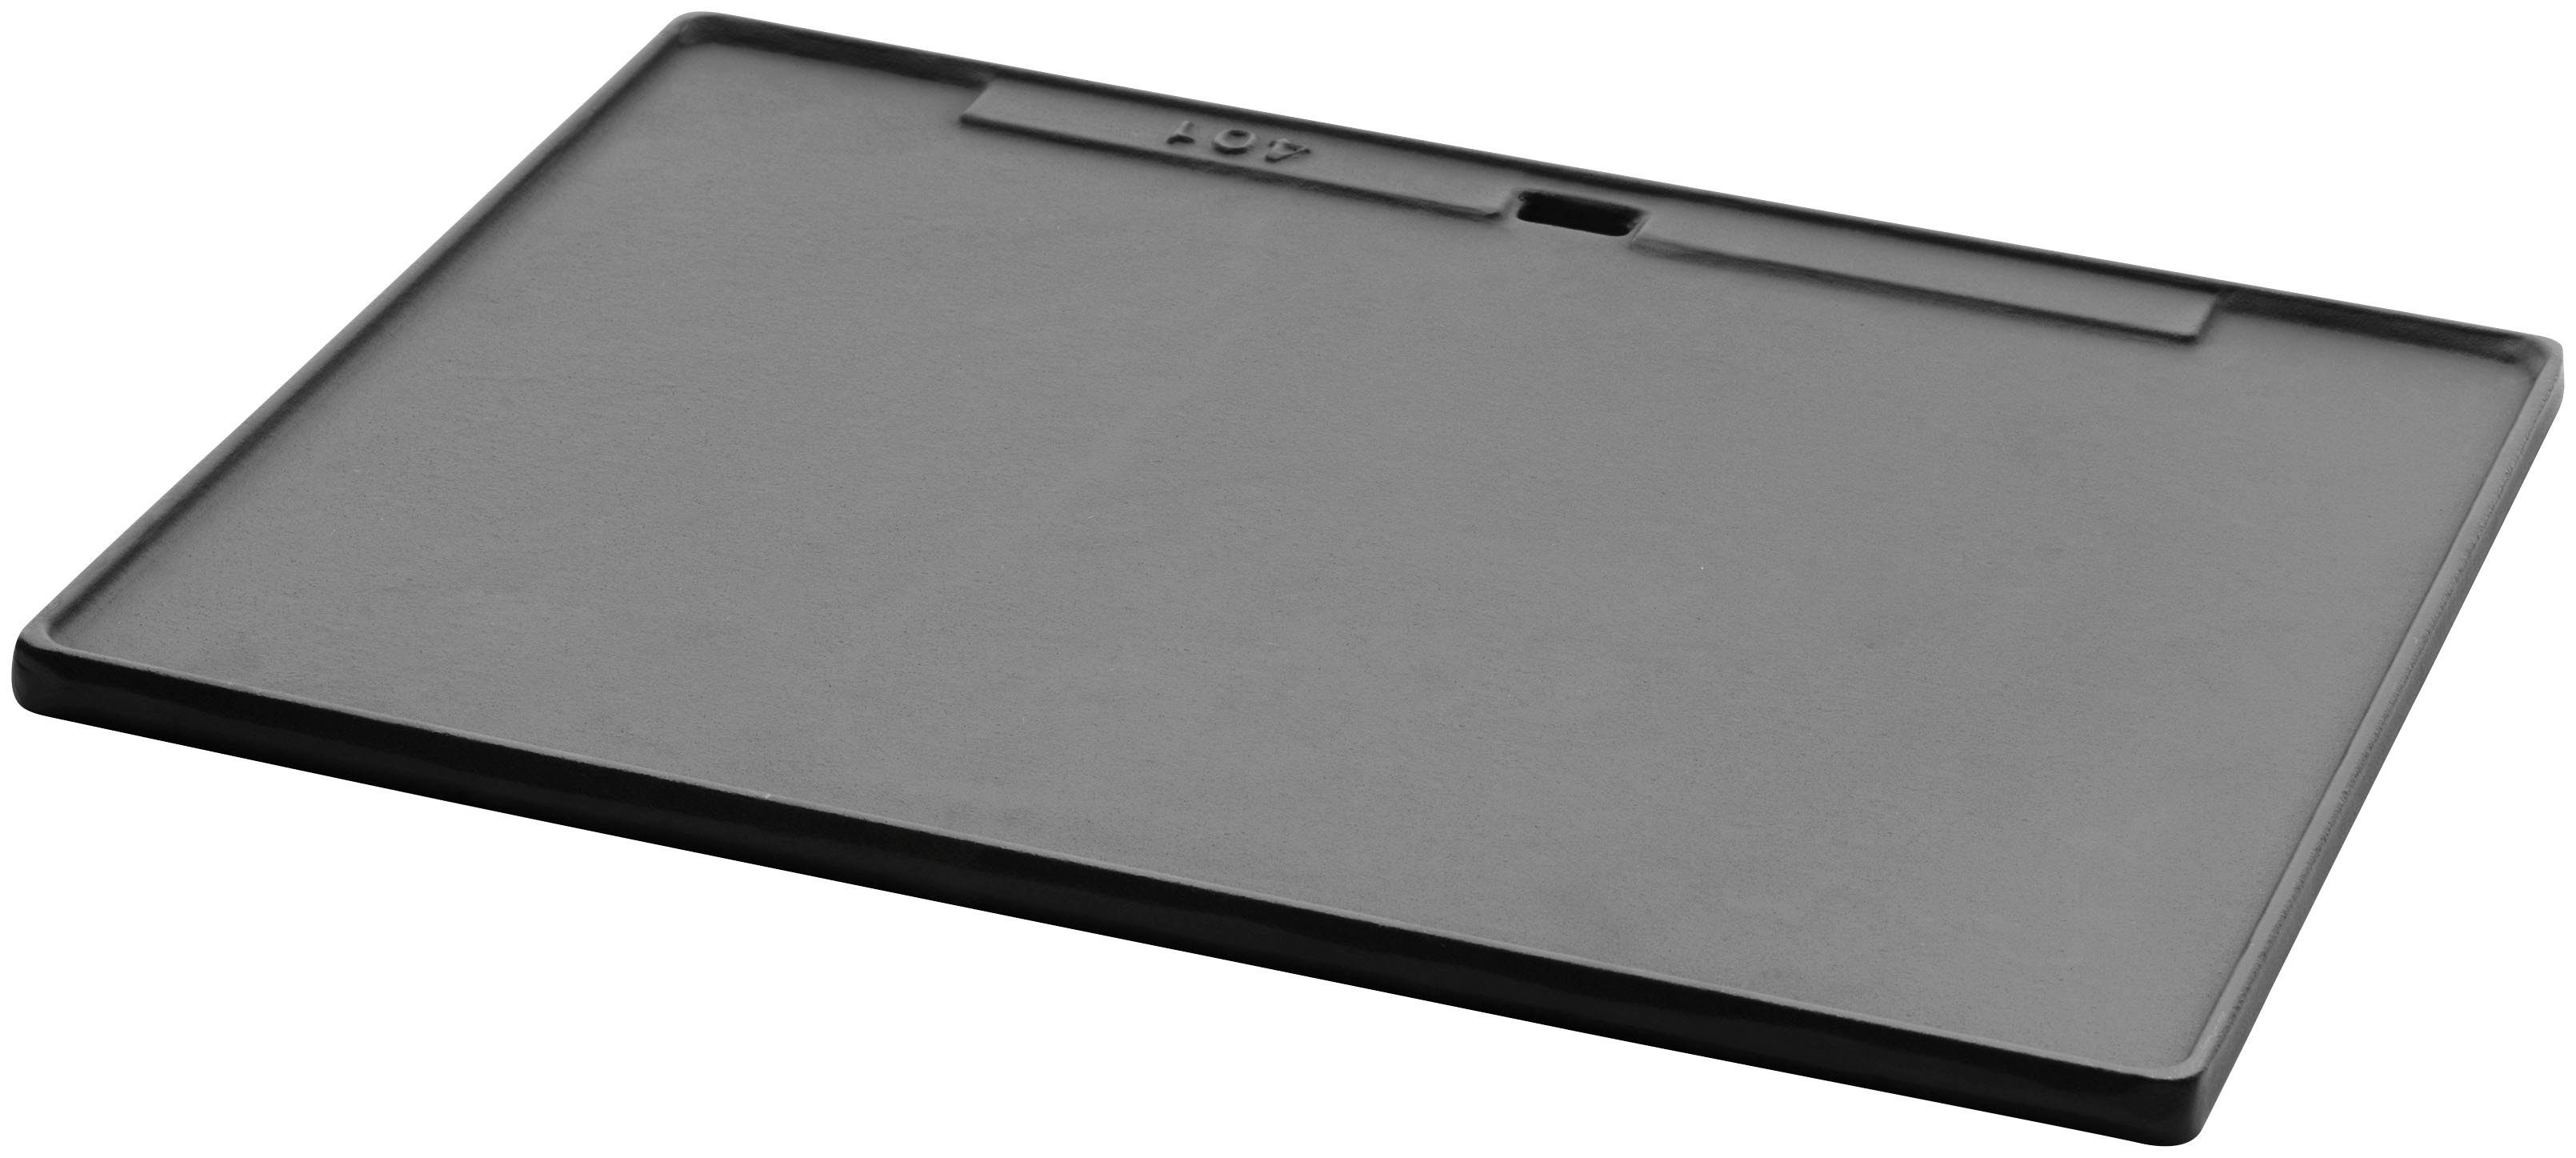 Buschbeck Grillplattenaufsatz Plancha-Platte mit Edelstahl, für T37 x Kunststoff, x Outdoorküchen, Gusseisen, Grillspachtel, B47 H5cm Gusseisen